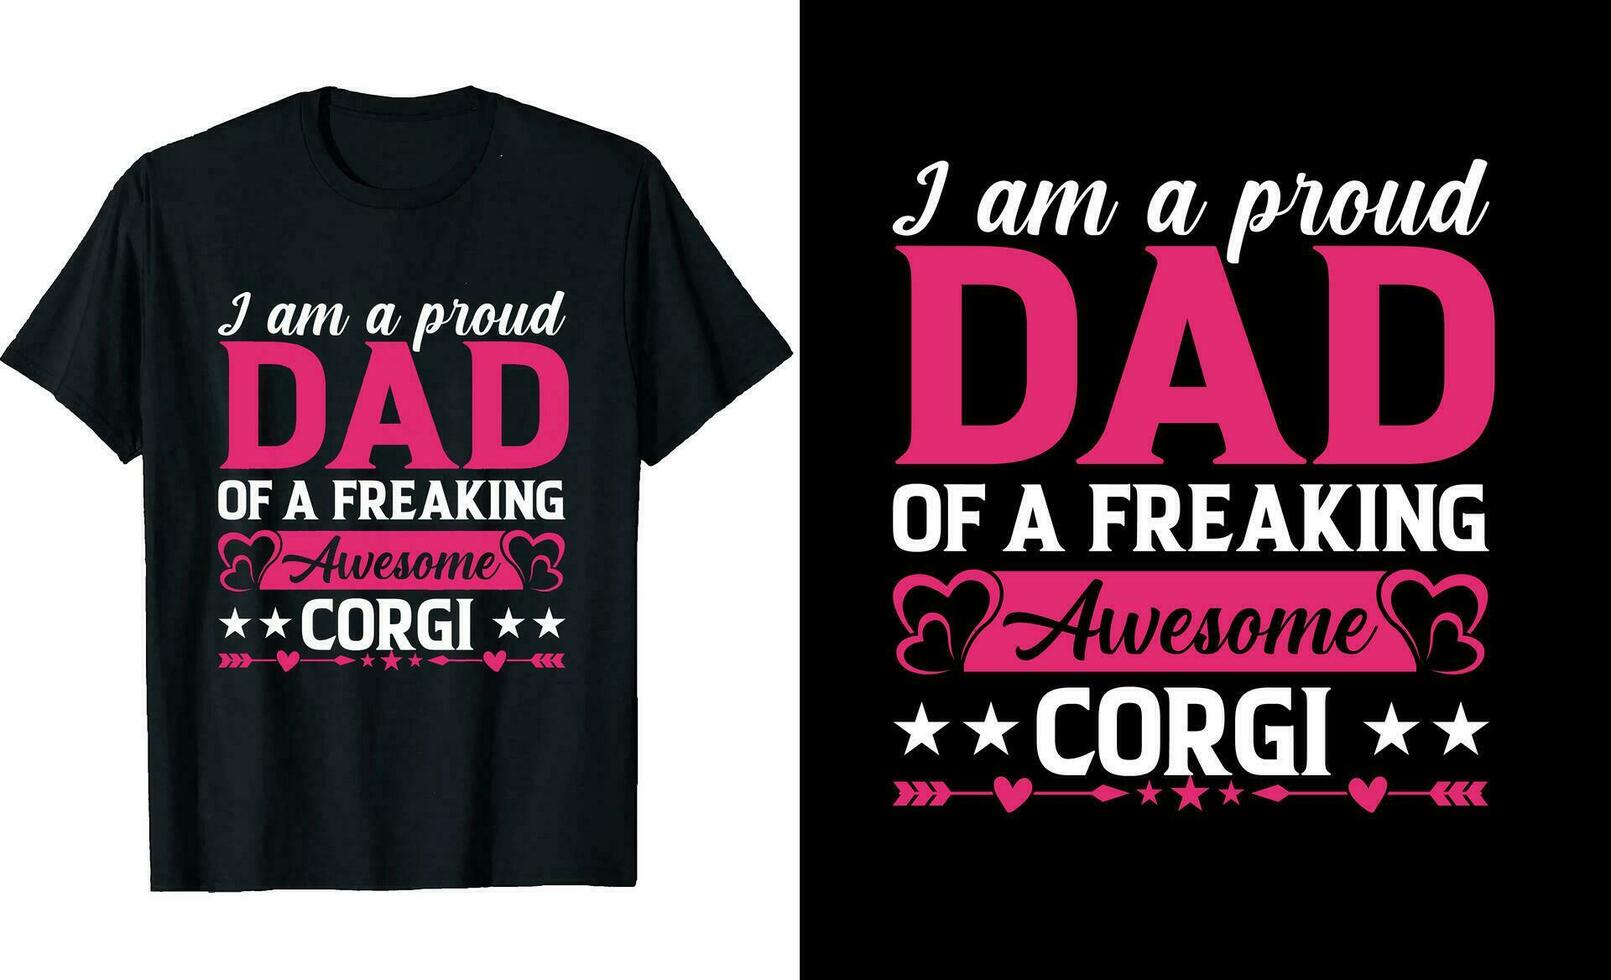 ik ben een trots vader van een verdomde geweldig corgi of vader t overhemd ontwerp of corgi t overhemd ontwerp vector